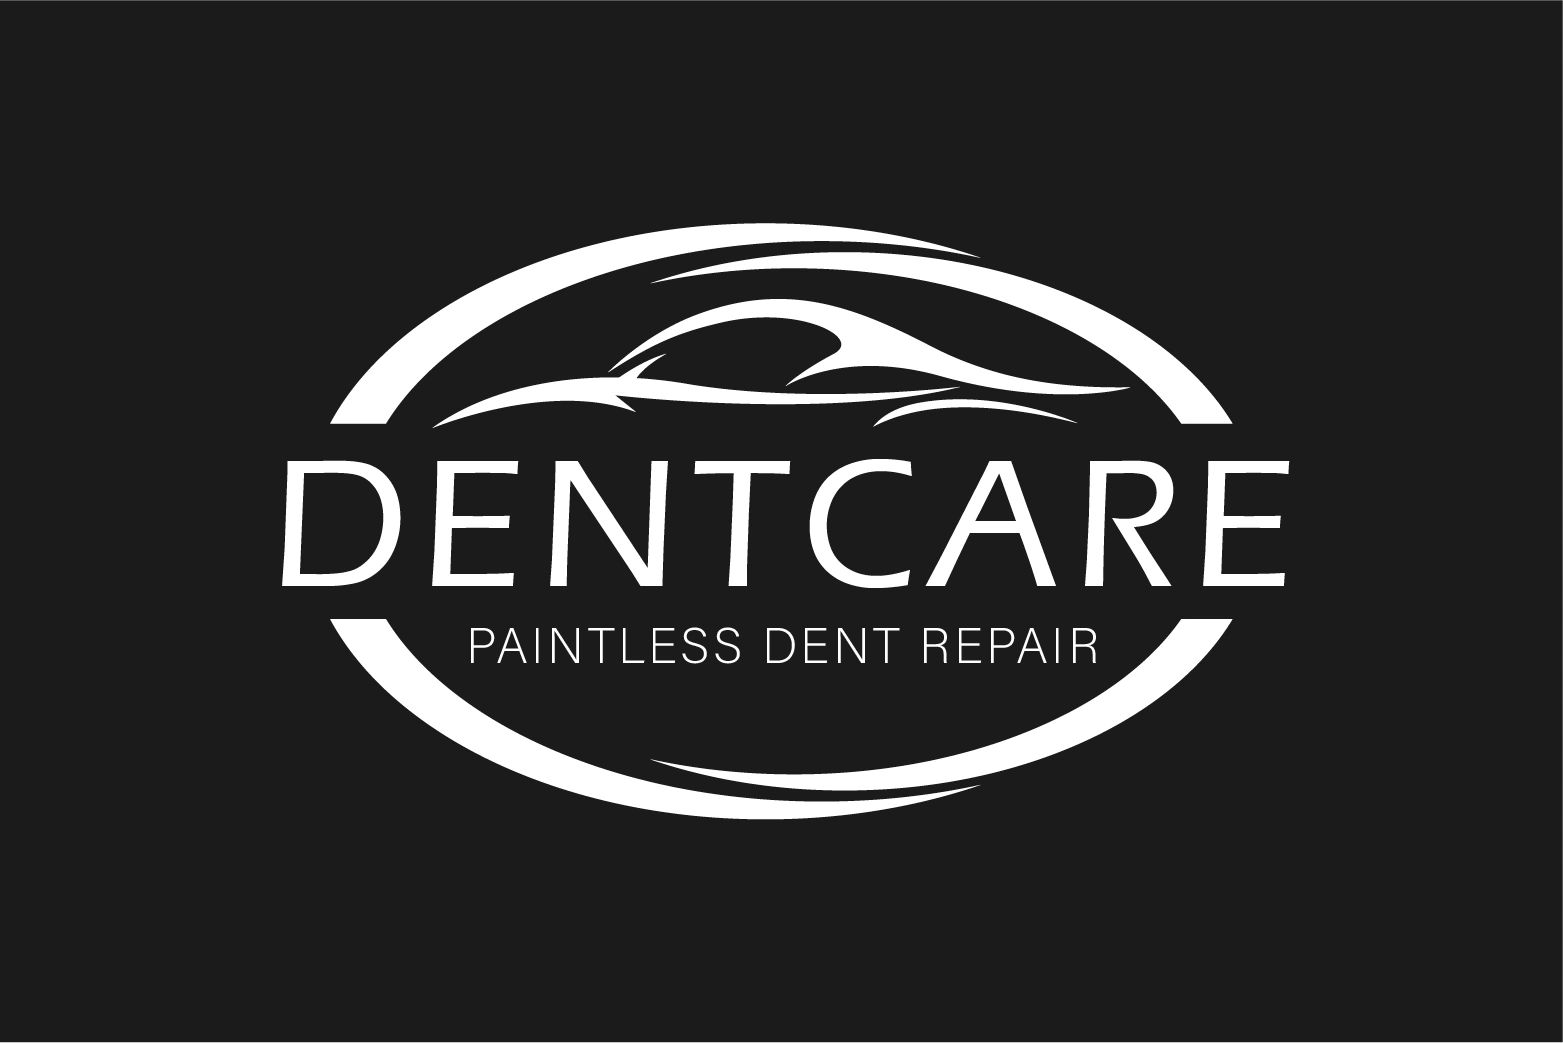 Dentcare Paintless dent repair logo